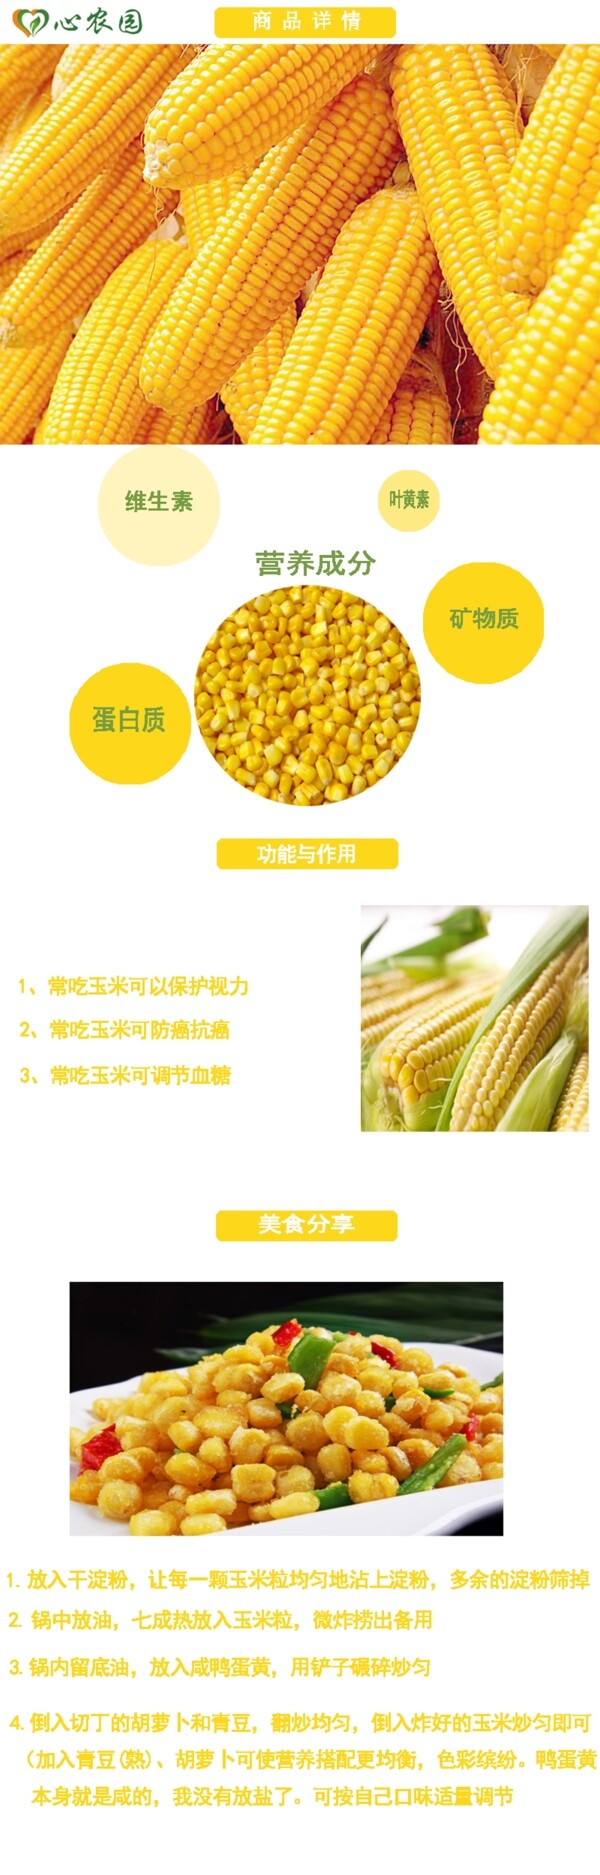 蔬菜玉米淘宝设计